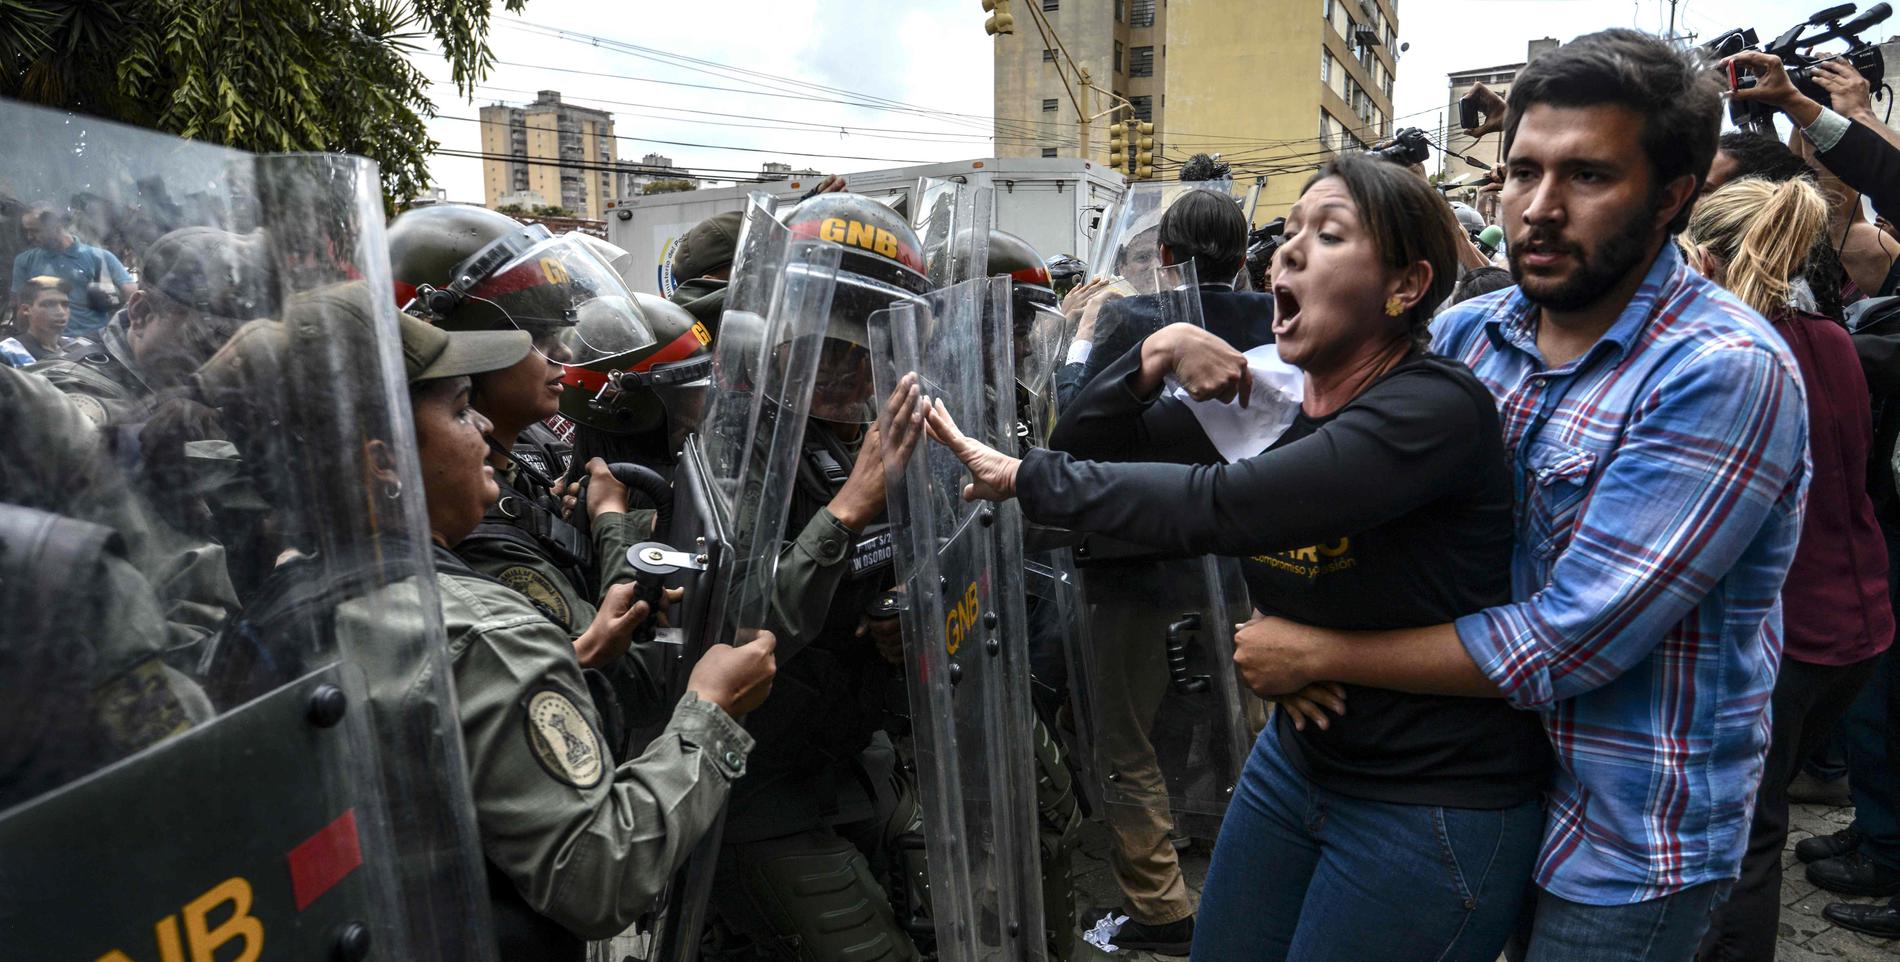 Oppositionspolitikern Amelia Belisario protesterar framför nationalgardet utanför Högsta domstolen i Caracas. Bilden togs i mars.